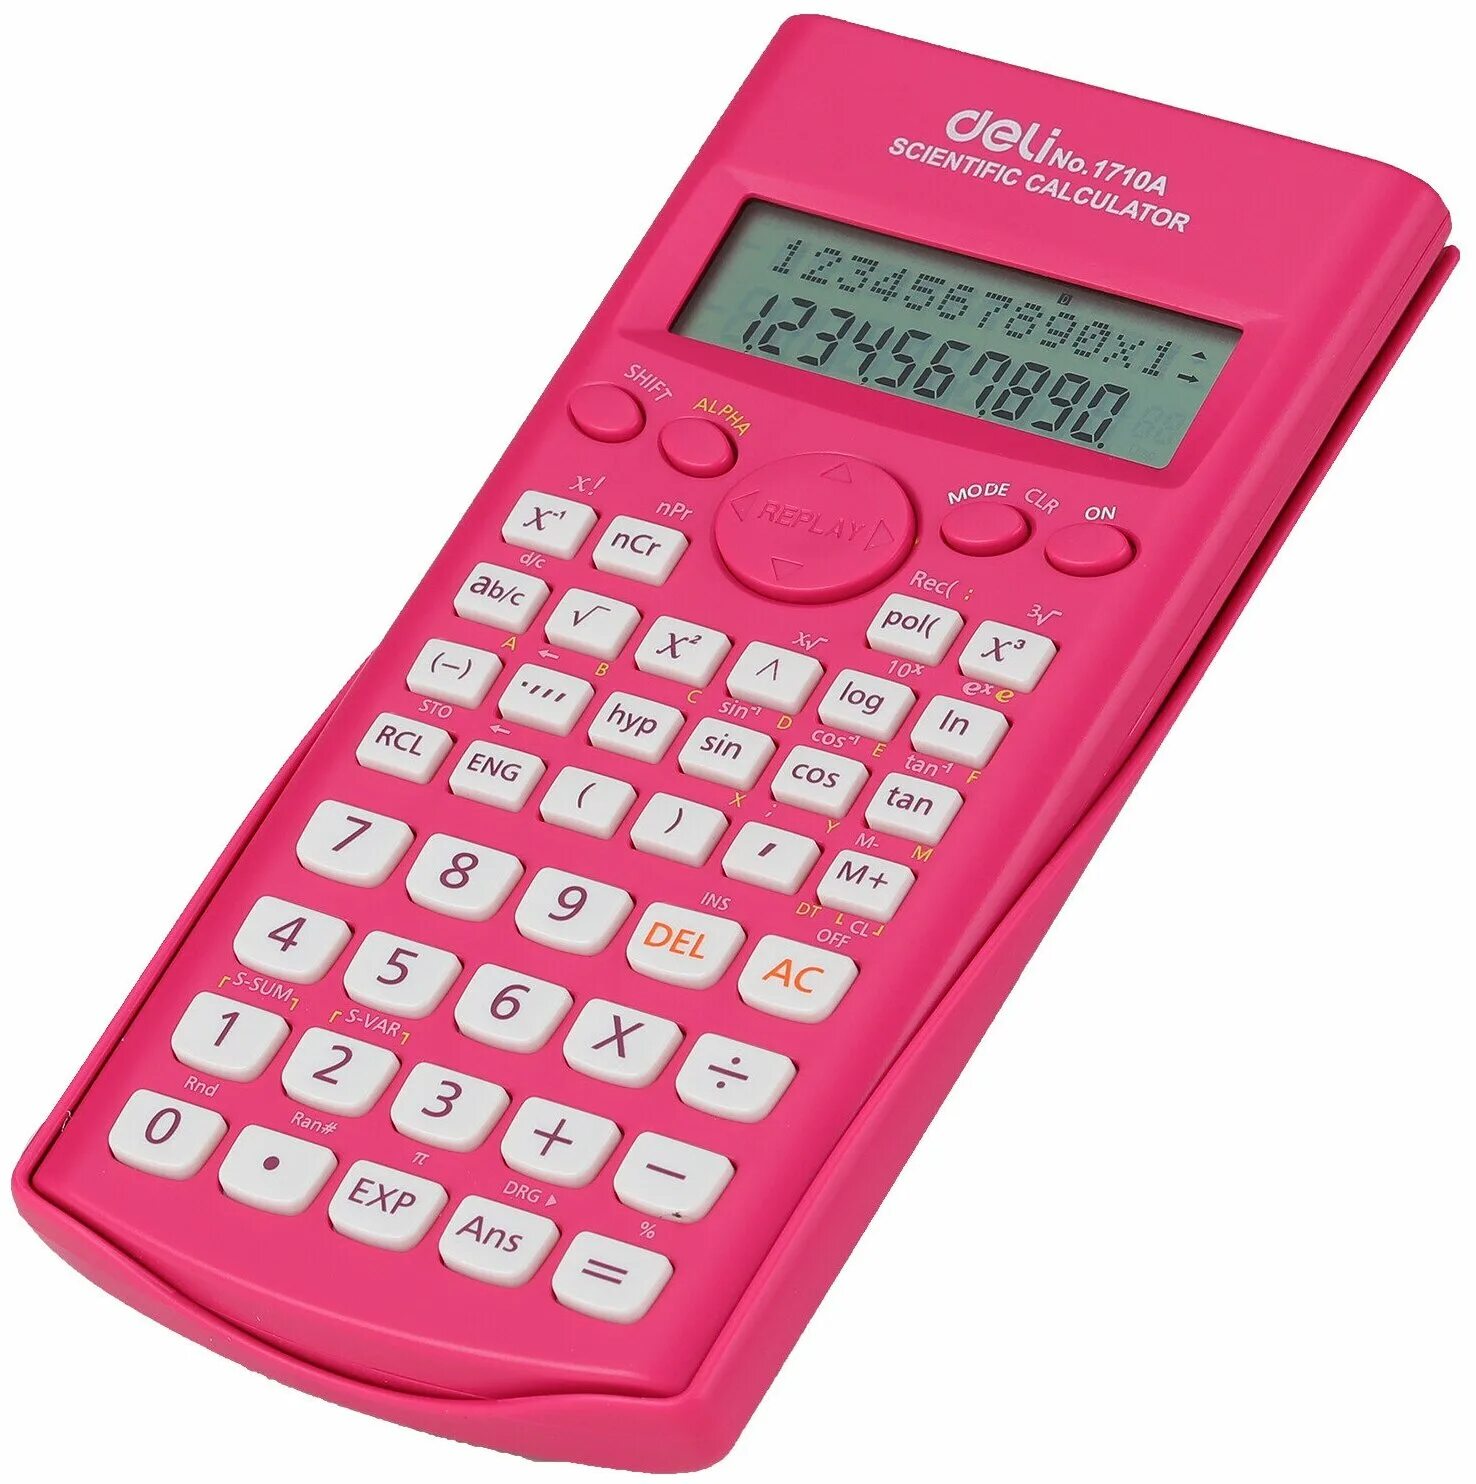 Scientific calculator. E1710a/Red калькулятор Deli e1710a/Red красный 10+2-разр.. Калькулятор научный Deli e1711. Калькулятор 12 разр. 1210 Deli. Калькулятор, 12 цифр, "Deli" e1589 (красный).